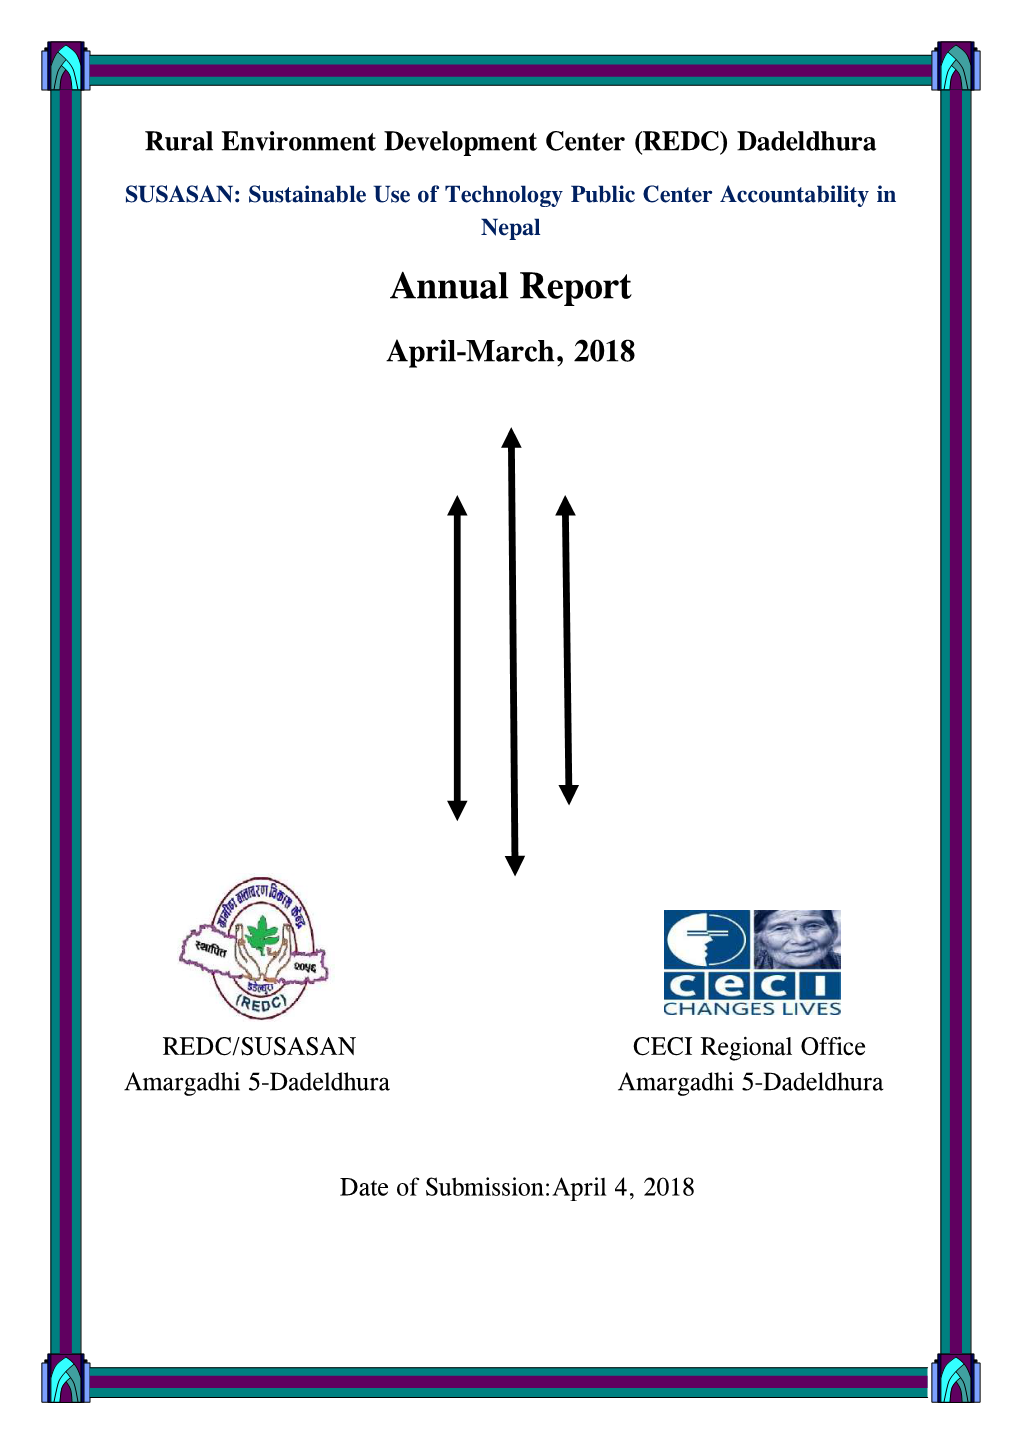 Annual Report April-March, 2018